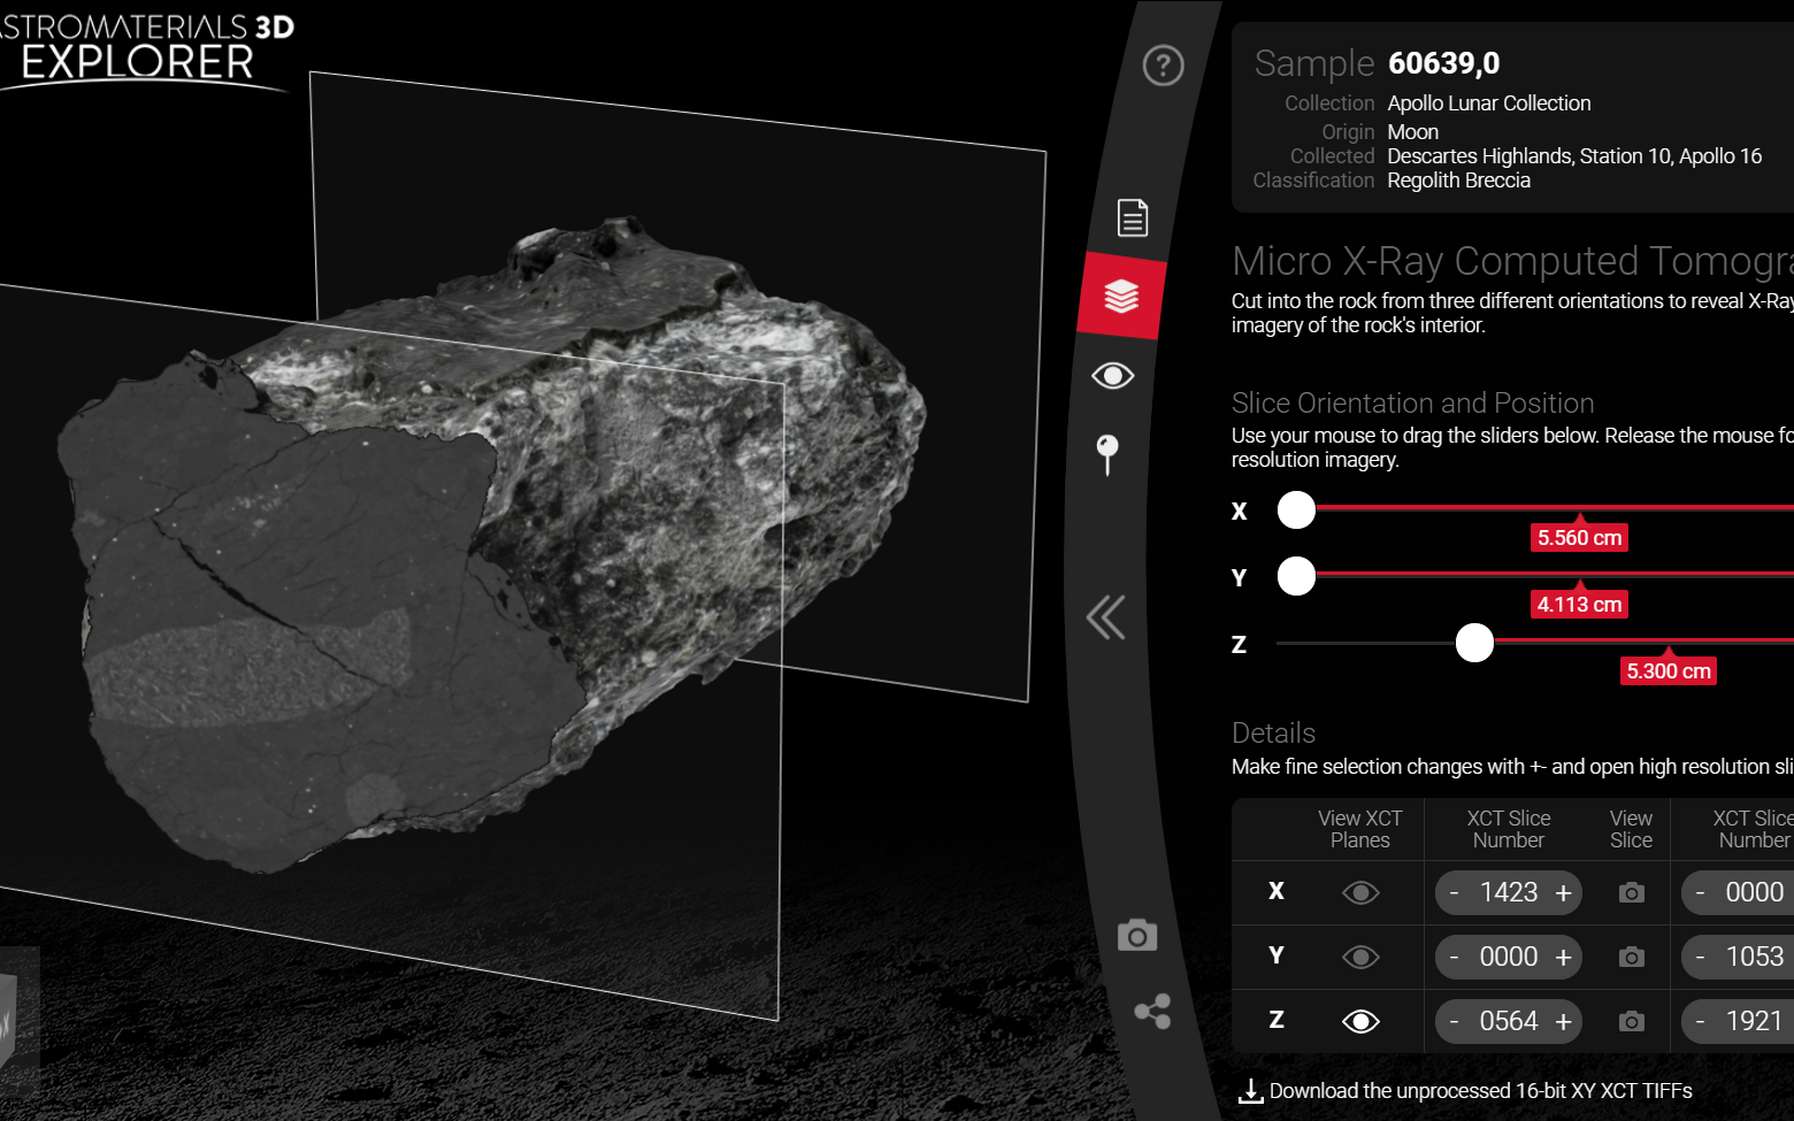 La Nasa vous propose de manipuler des météorites et des roches lunaires en réalité virtuelle